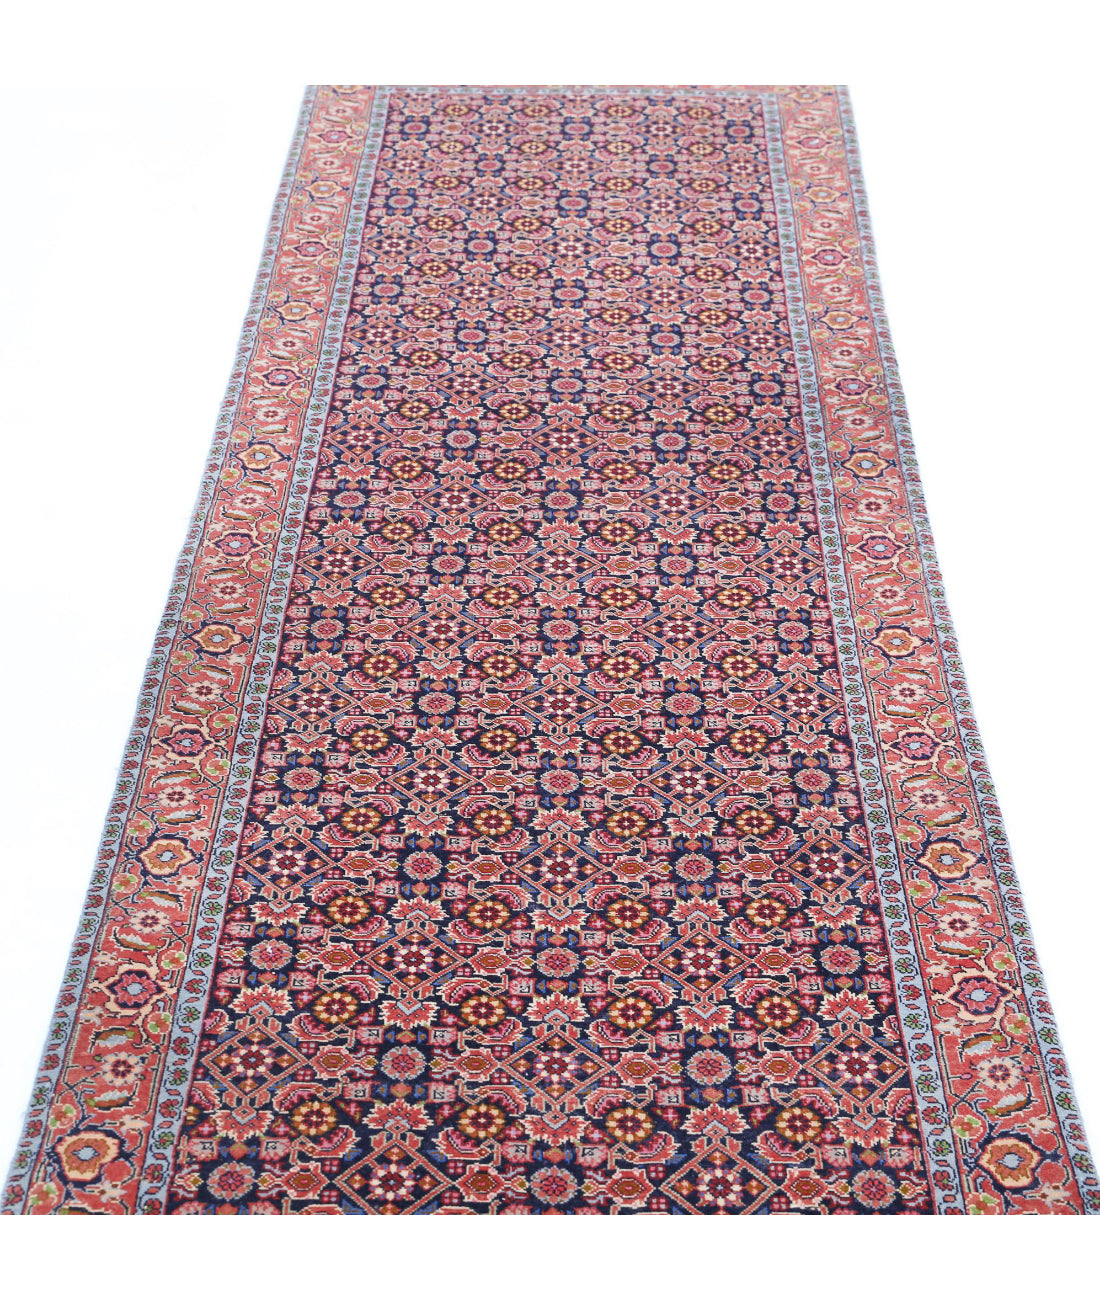 Hand Knotted Persian Bijar Wool Rug - 2'9'' x 9'7'' 2'9'' x 9'7'' (83 X 288) / Blue / Red